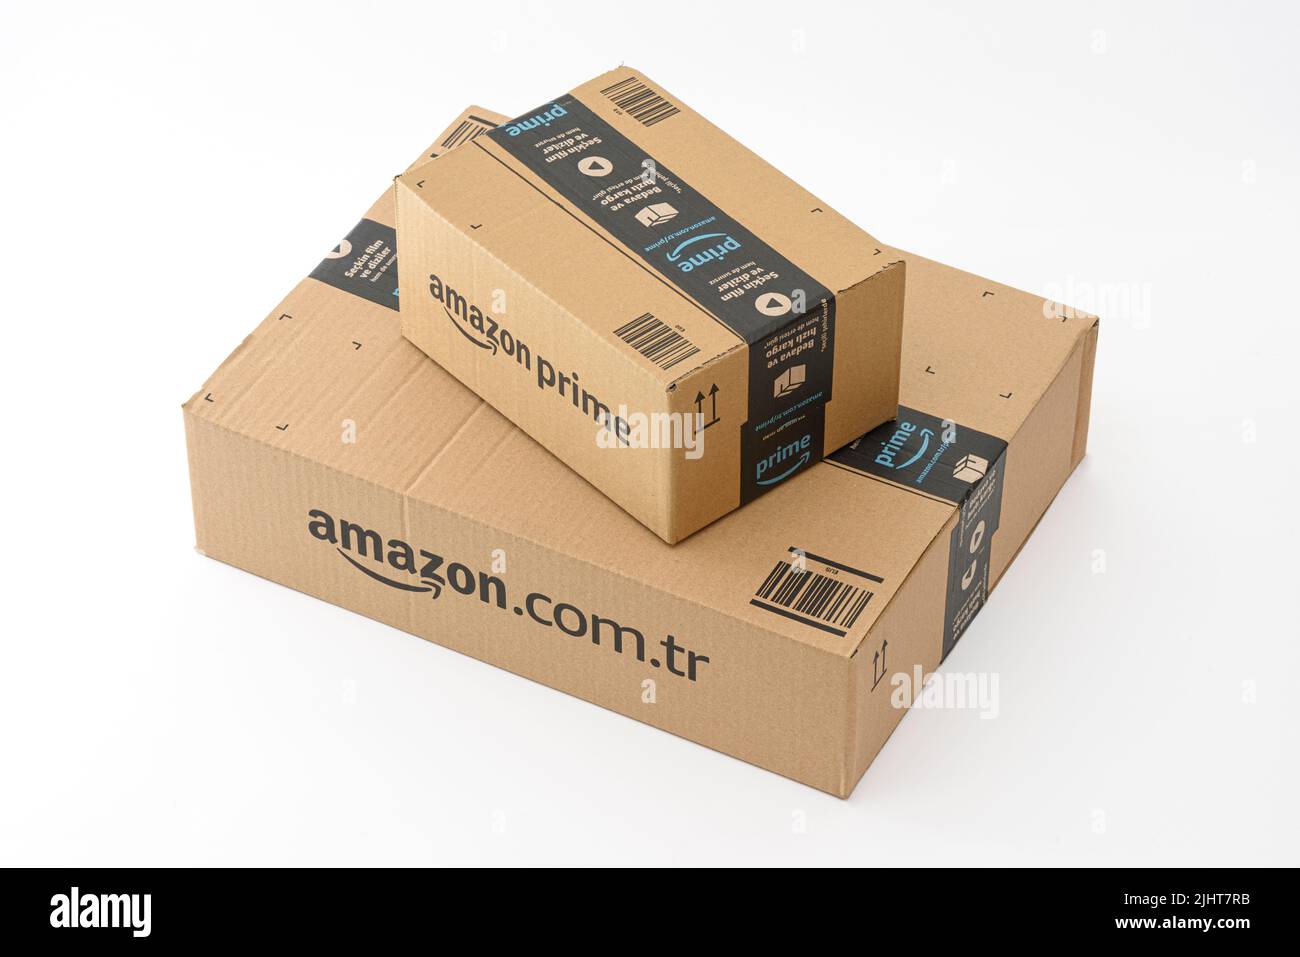 ISTANBUL, TÜRKEI - 2. JULI 2022: Amazon Prime Paket auf weißem Hintergrund.  Prime ist ein Service des Online-Händlers Amazon für eine schnellere  Lieferung o Stockfotografie - Alamy